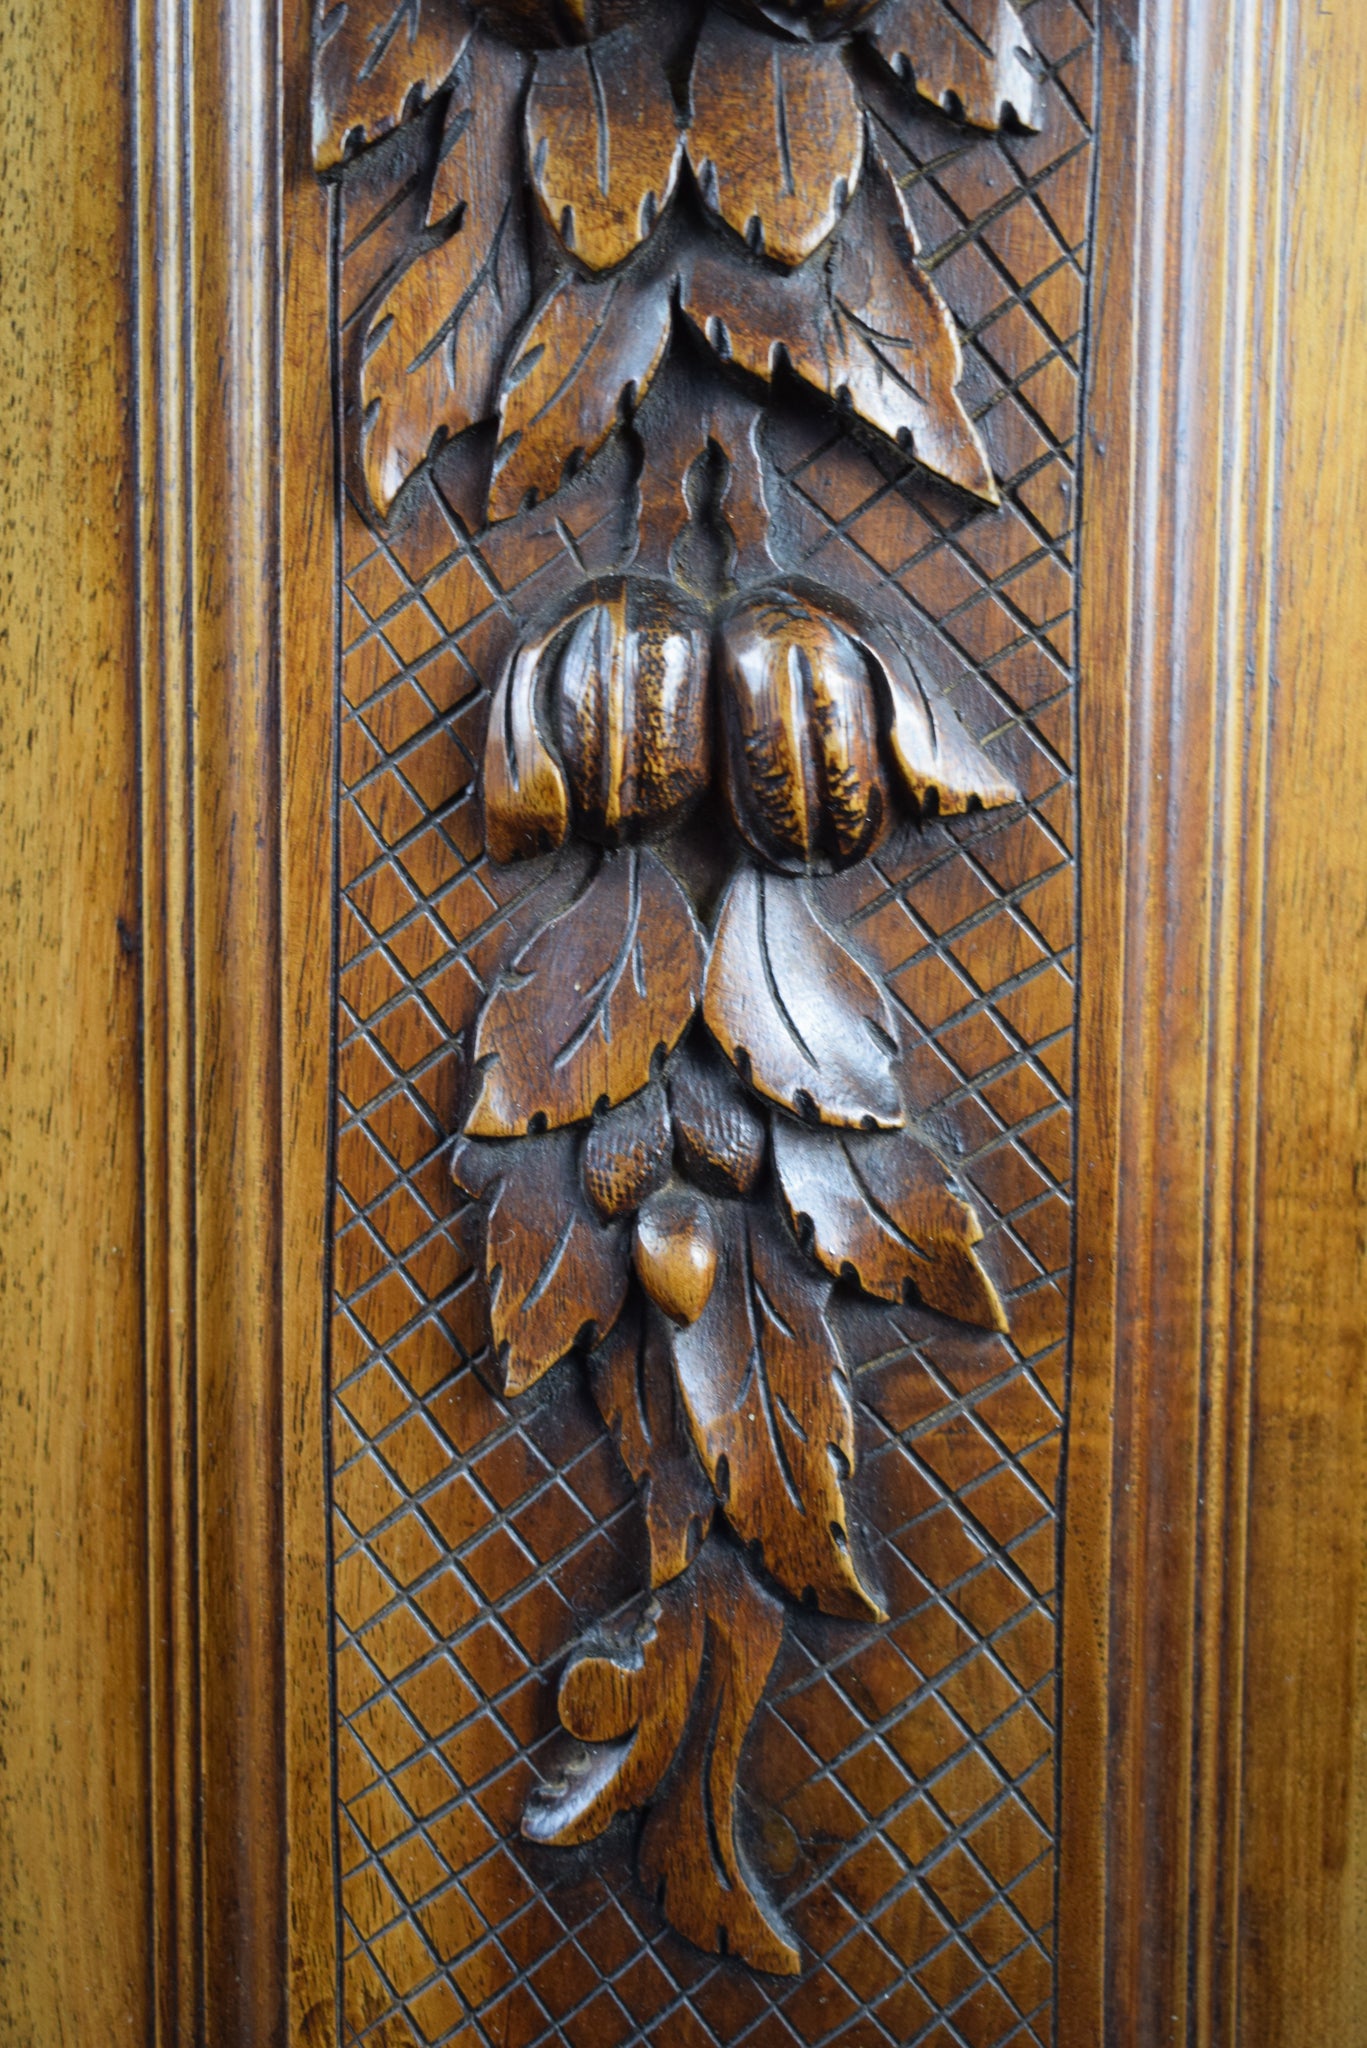 Pair of wood door